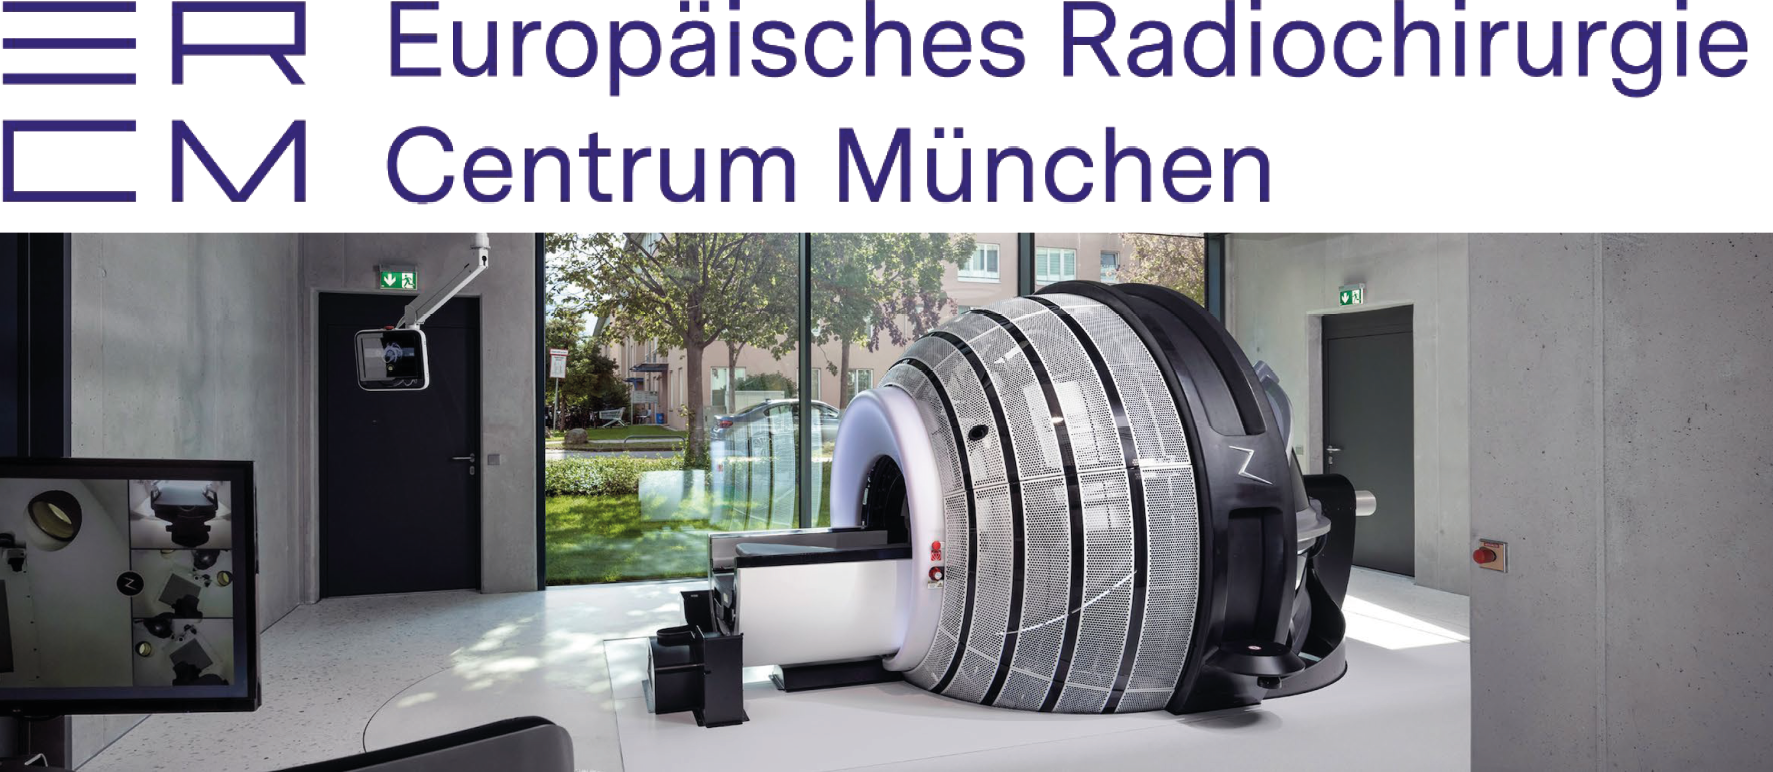 ERCM Europäisches Radioschirurgie Centrum München